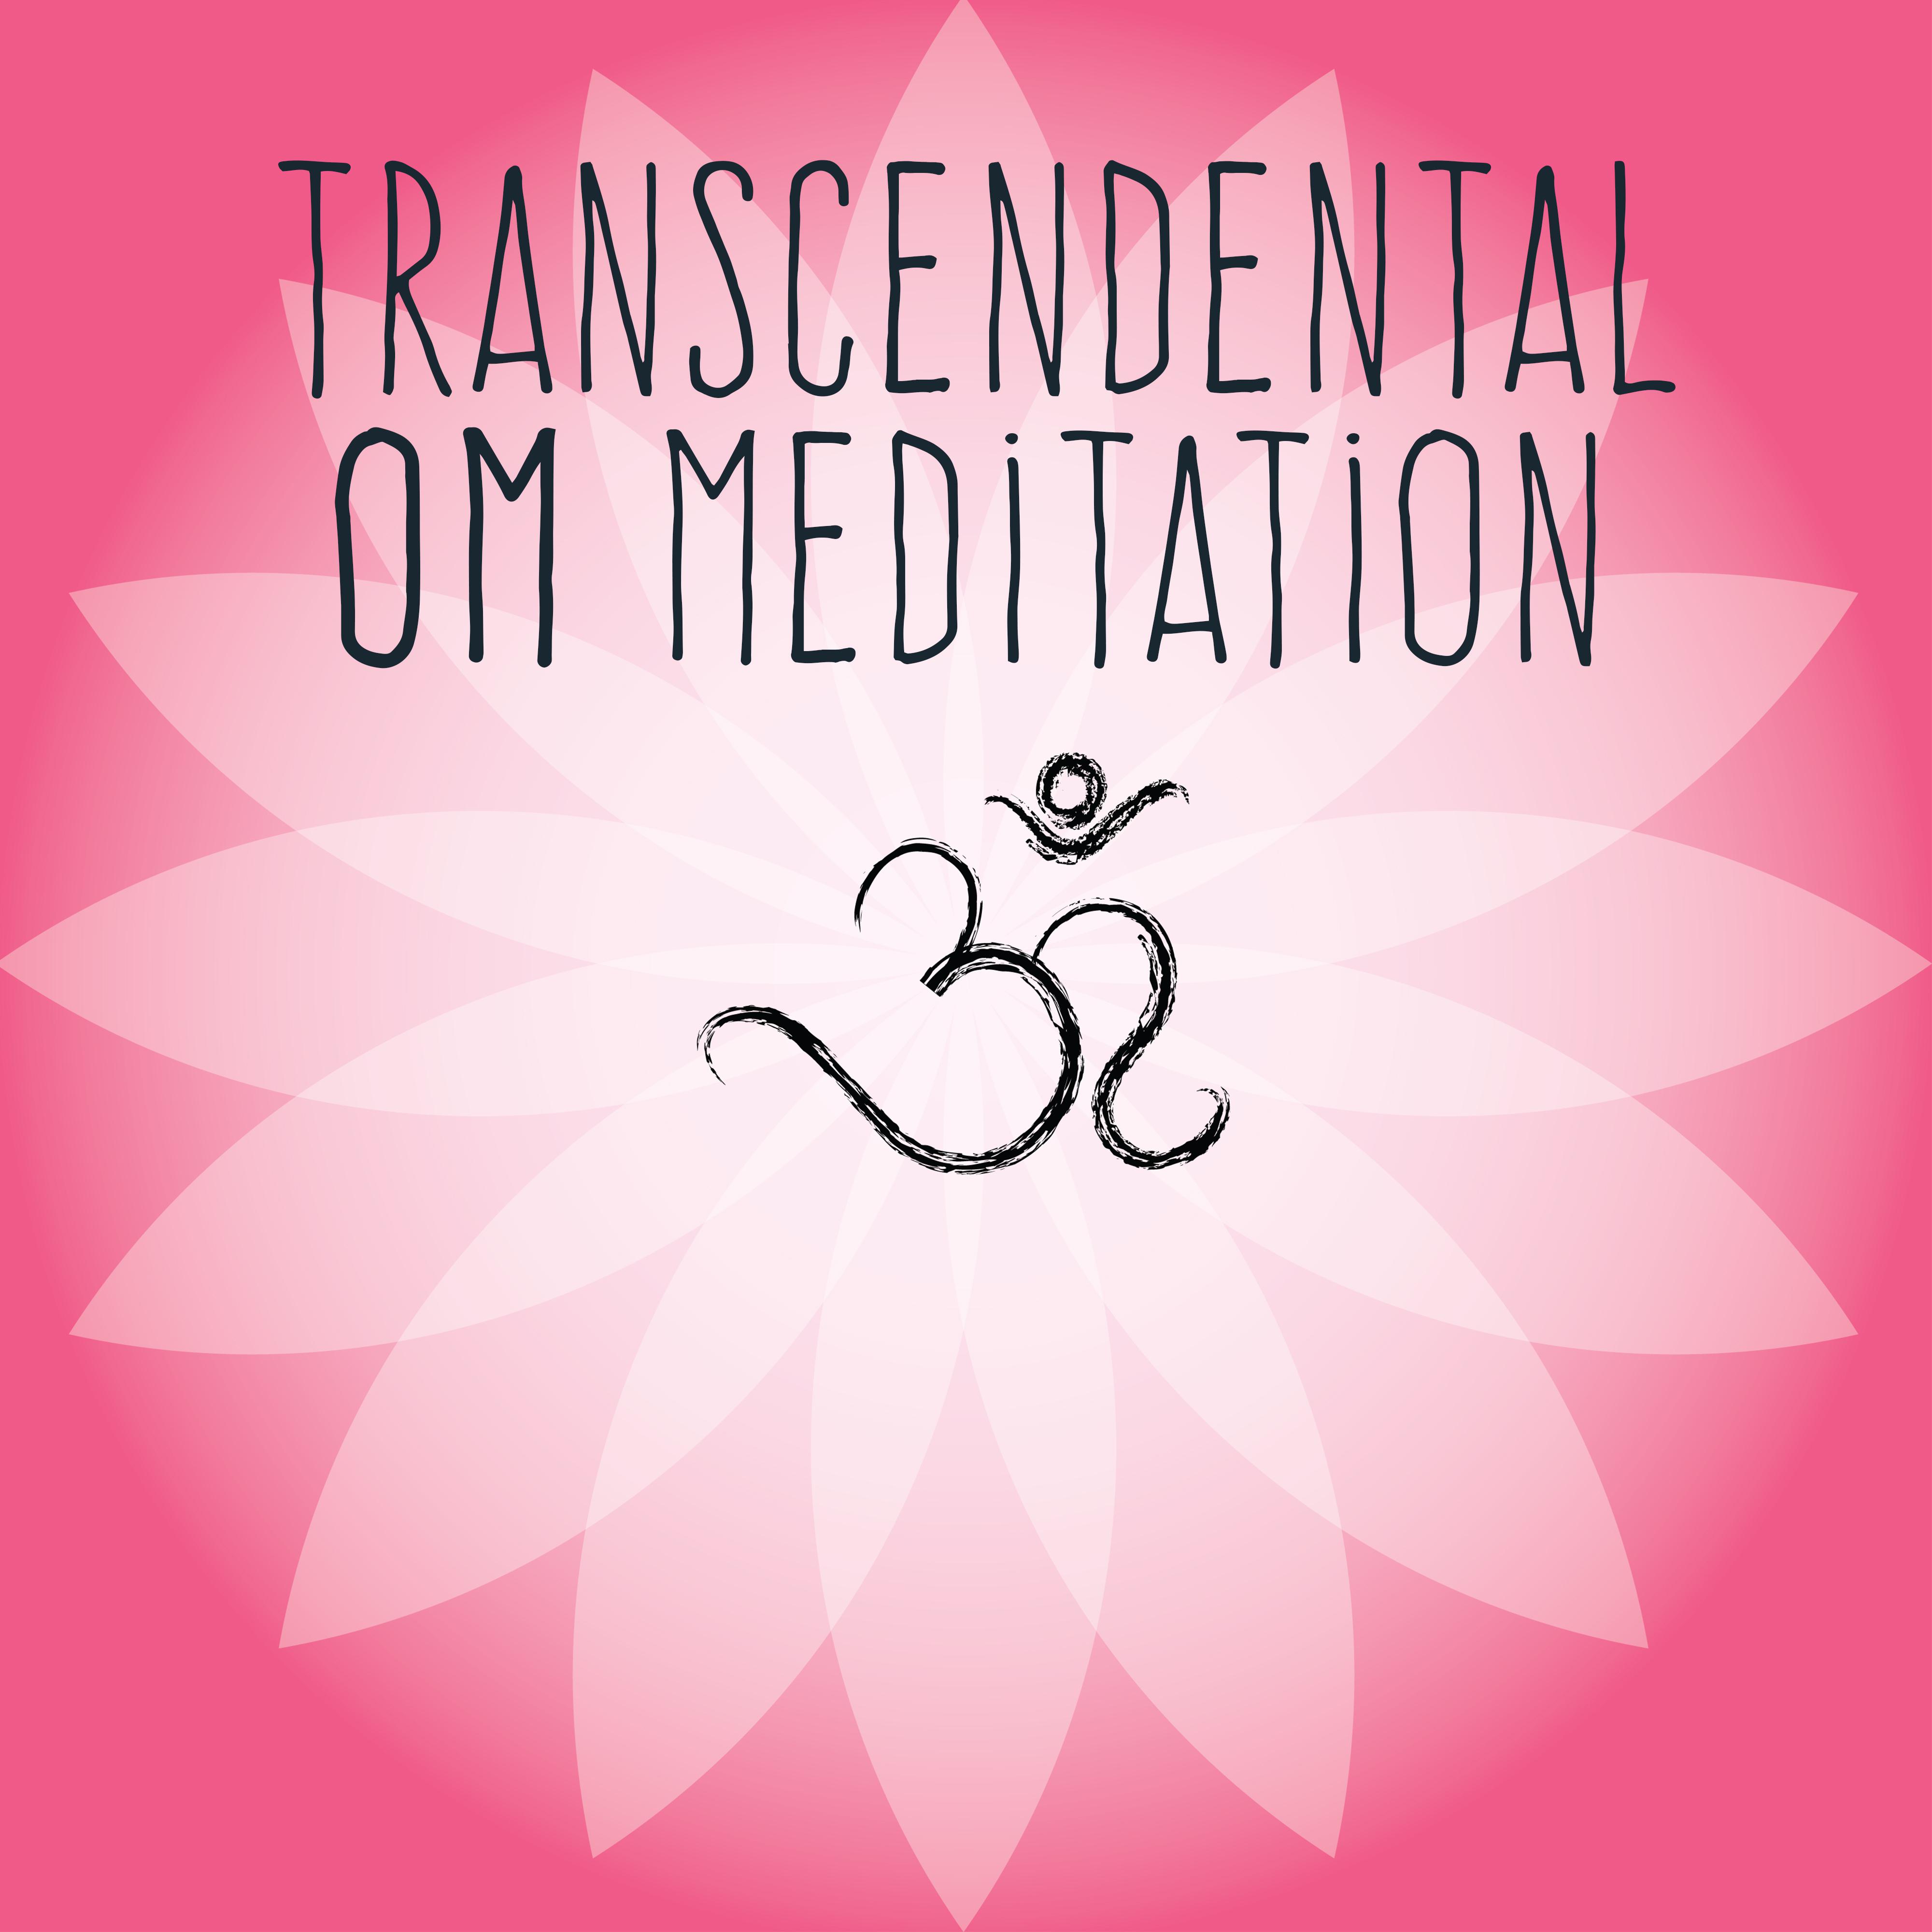 Transcendental OM Meditation